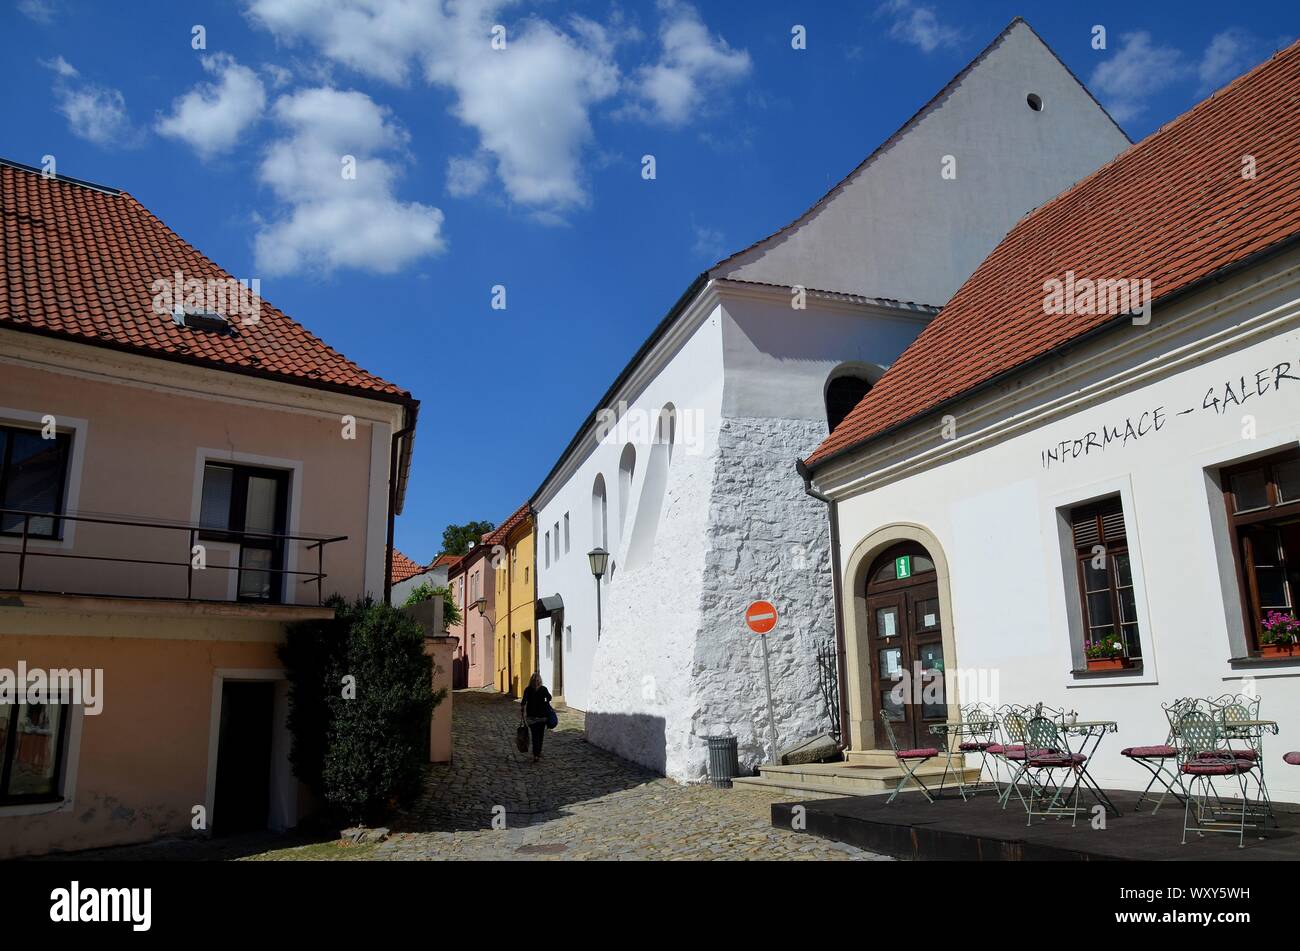 Trebic in Repubblica Ceca, UNESCO Weltkulturerbe: Die Hintere Synagogue im jüdischen Viertel Foto Stock